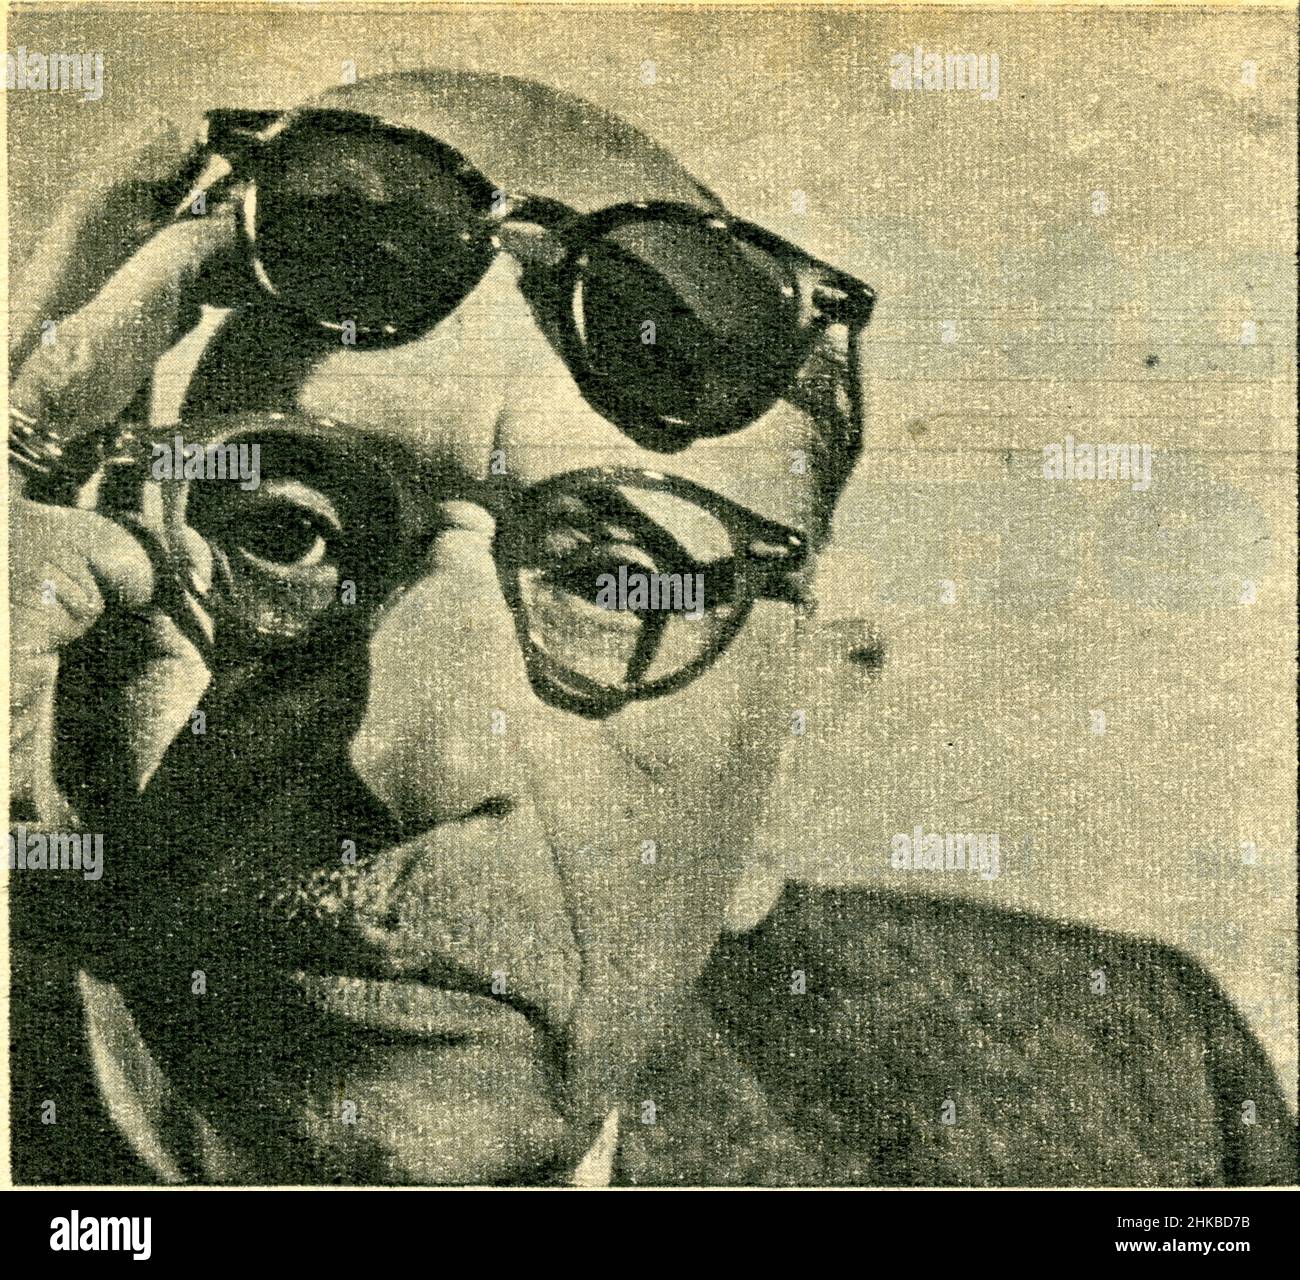 Igor Fiodorovitch Stravinsky, né le 17 juin 1882 à Oranienbaum en Russie et mort le 6 avril 1971 à New York aux États-Unis, est un compositeur, chef d Stock Photo